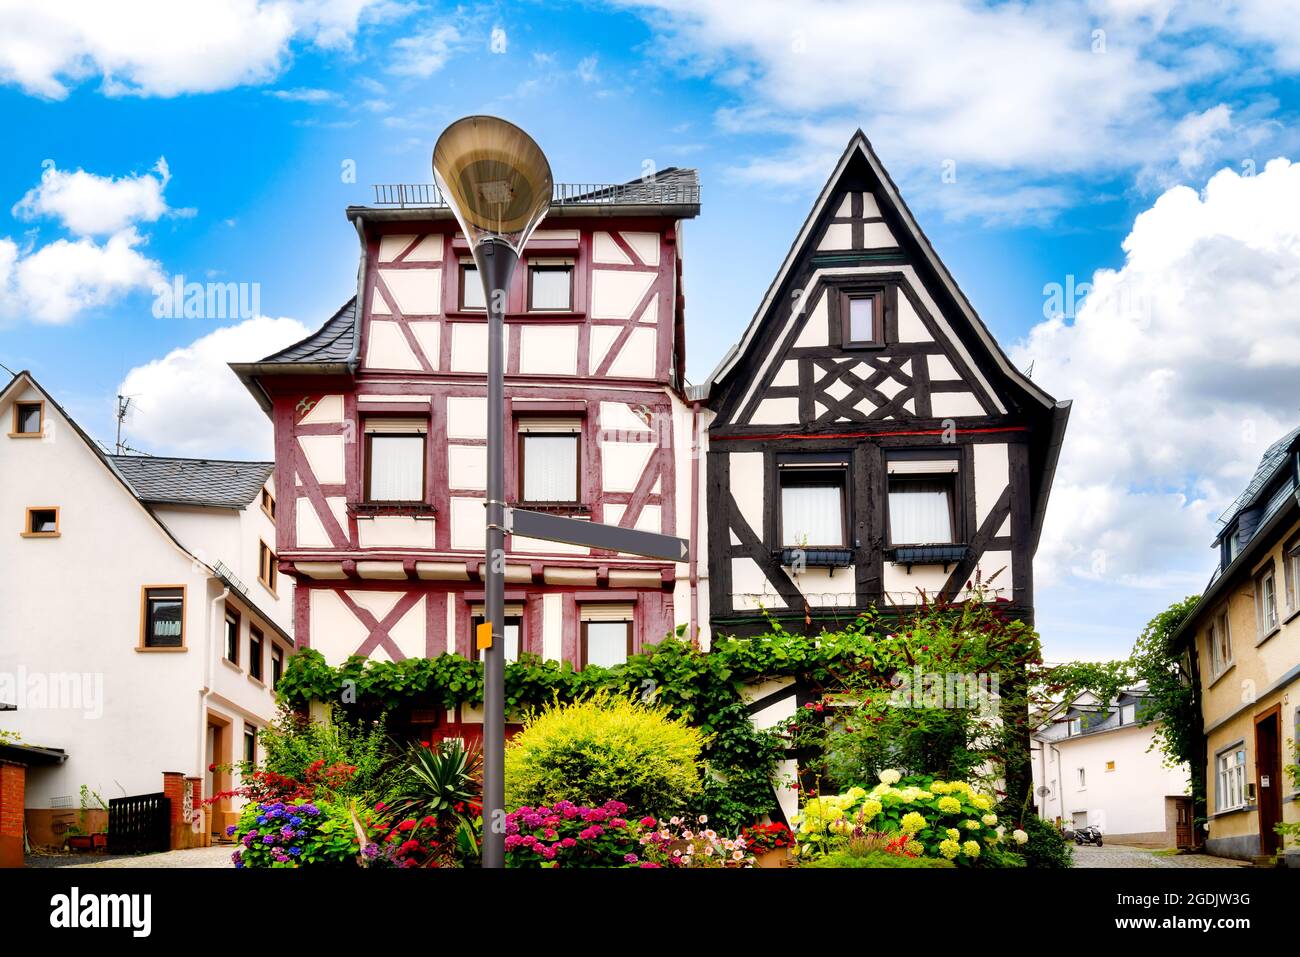 Casas de entramado de madera con flores floridas en primer plano en el casco antiguo de Montabaur, Alemania Foto de stock